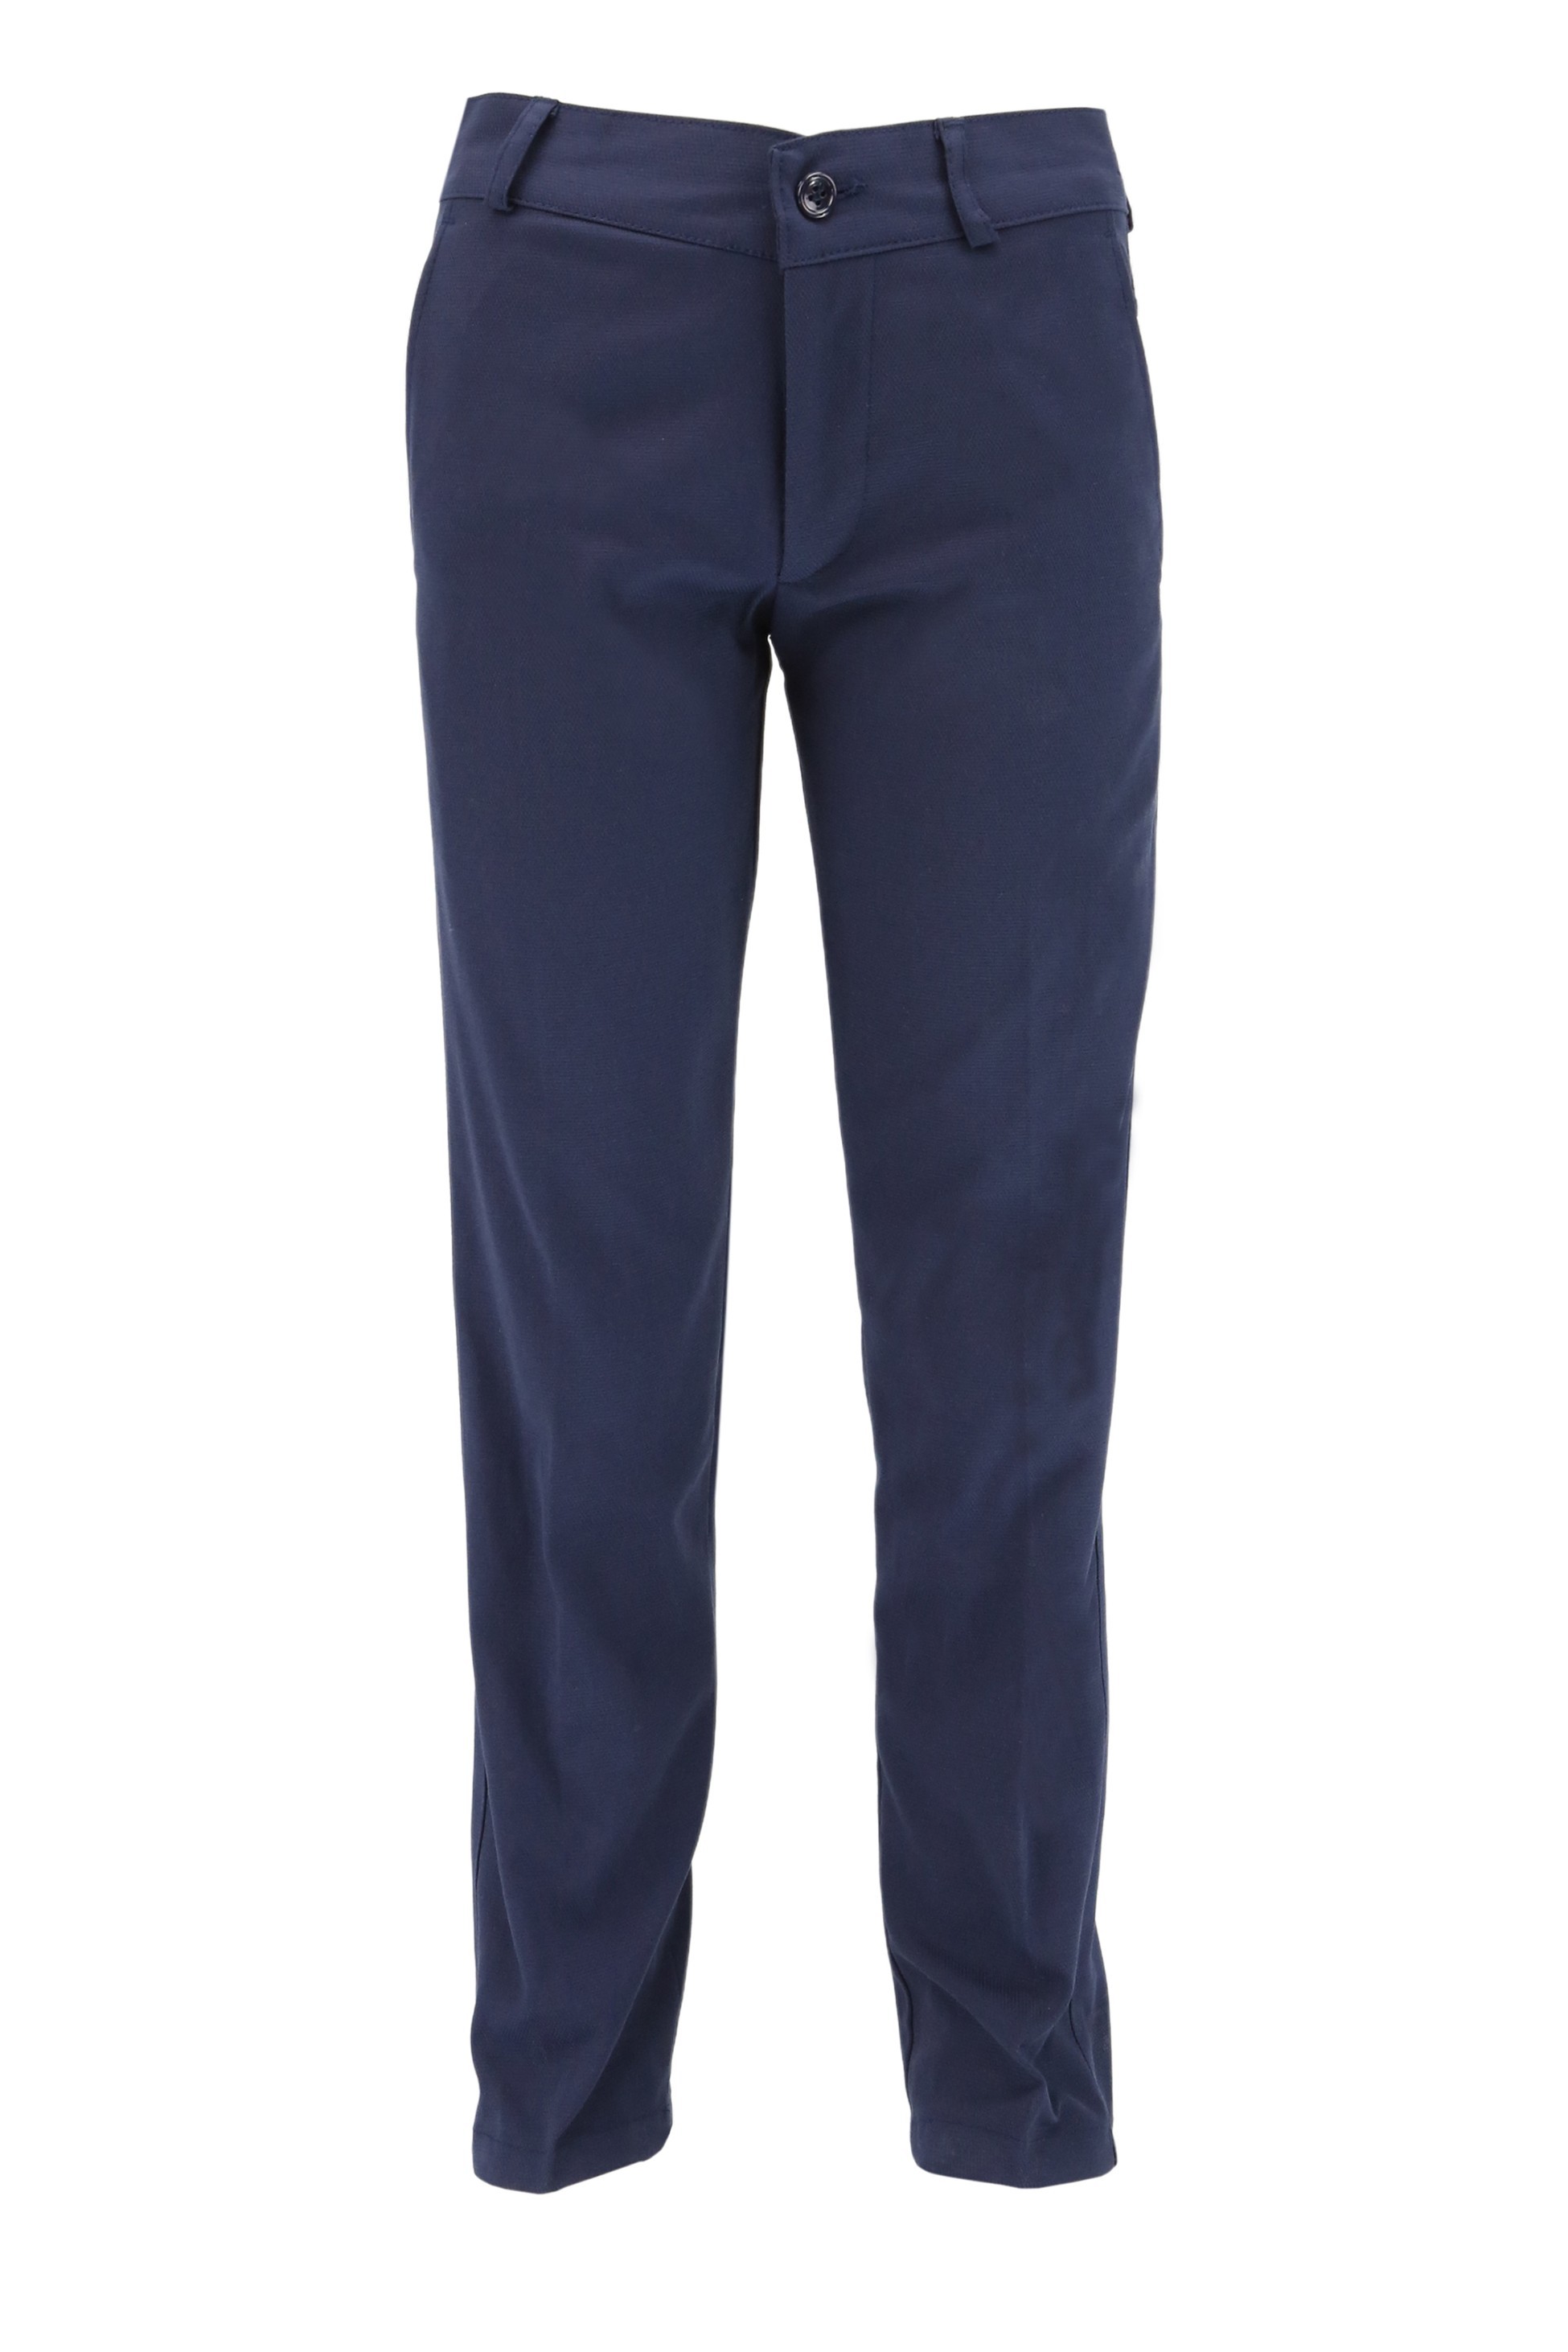 Jungen Vielseitige Twill-Hosen, Formelle Reguläre Passform Hosen für Jeden Anlass - Navy blau